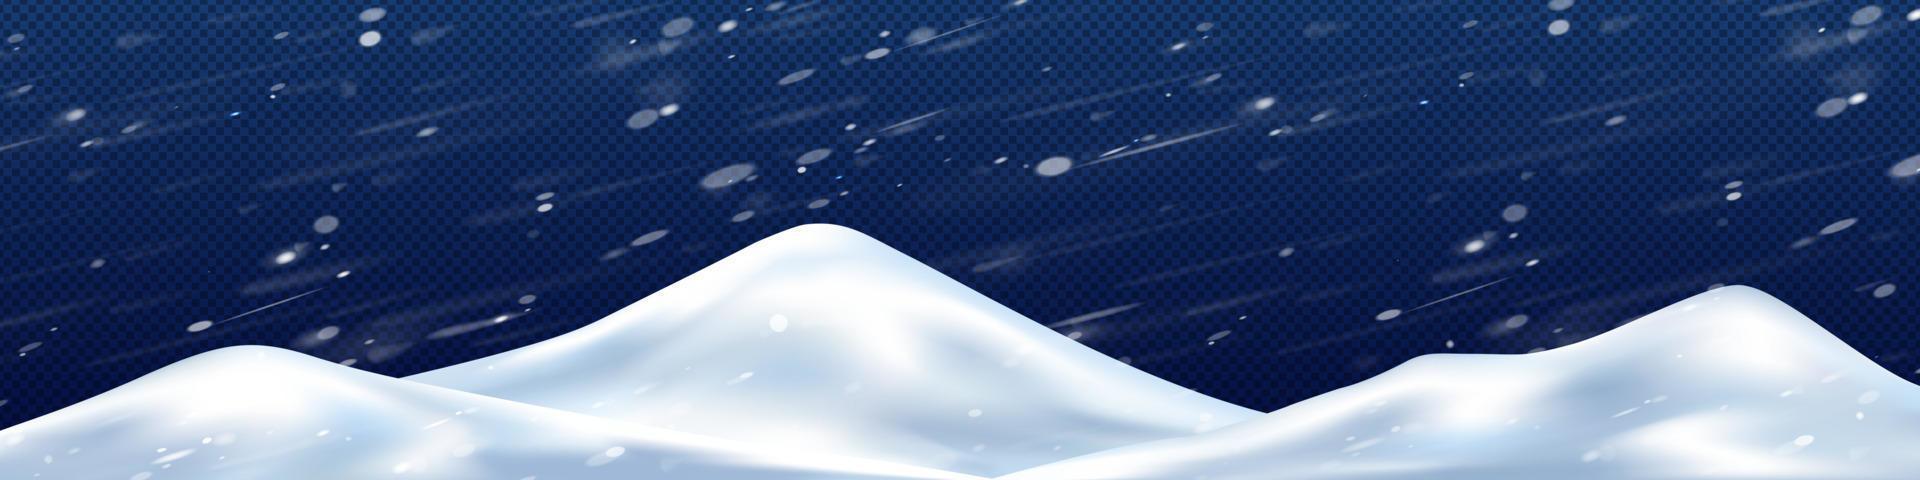 aambeien van sneeuw in winter storm png, 3d illustratie vector